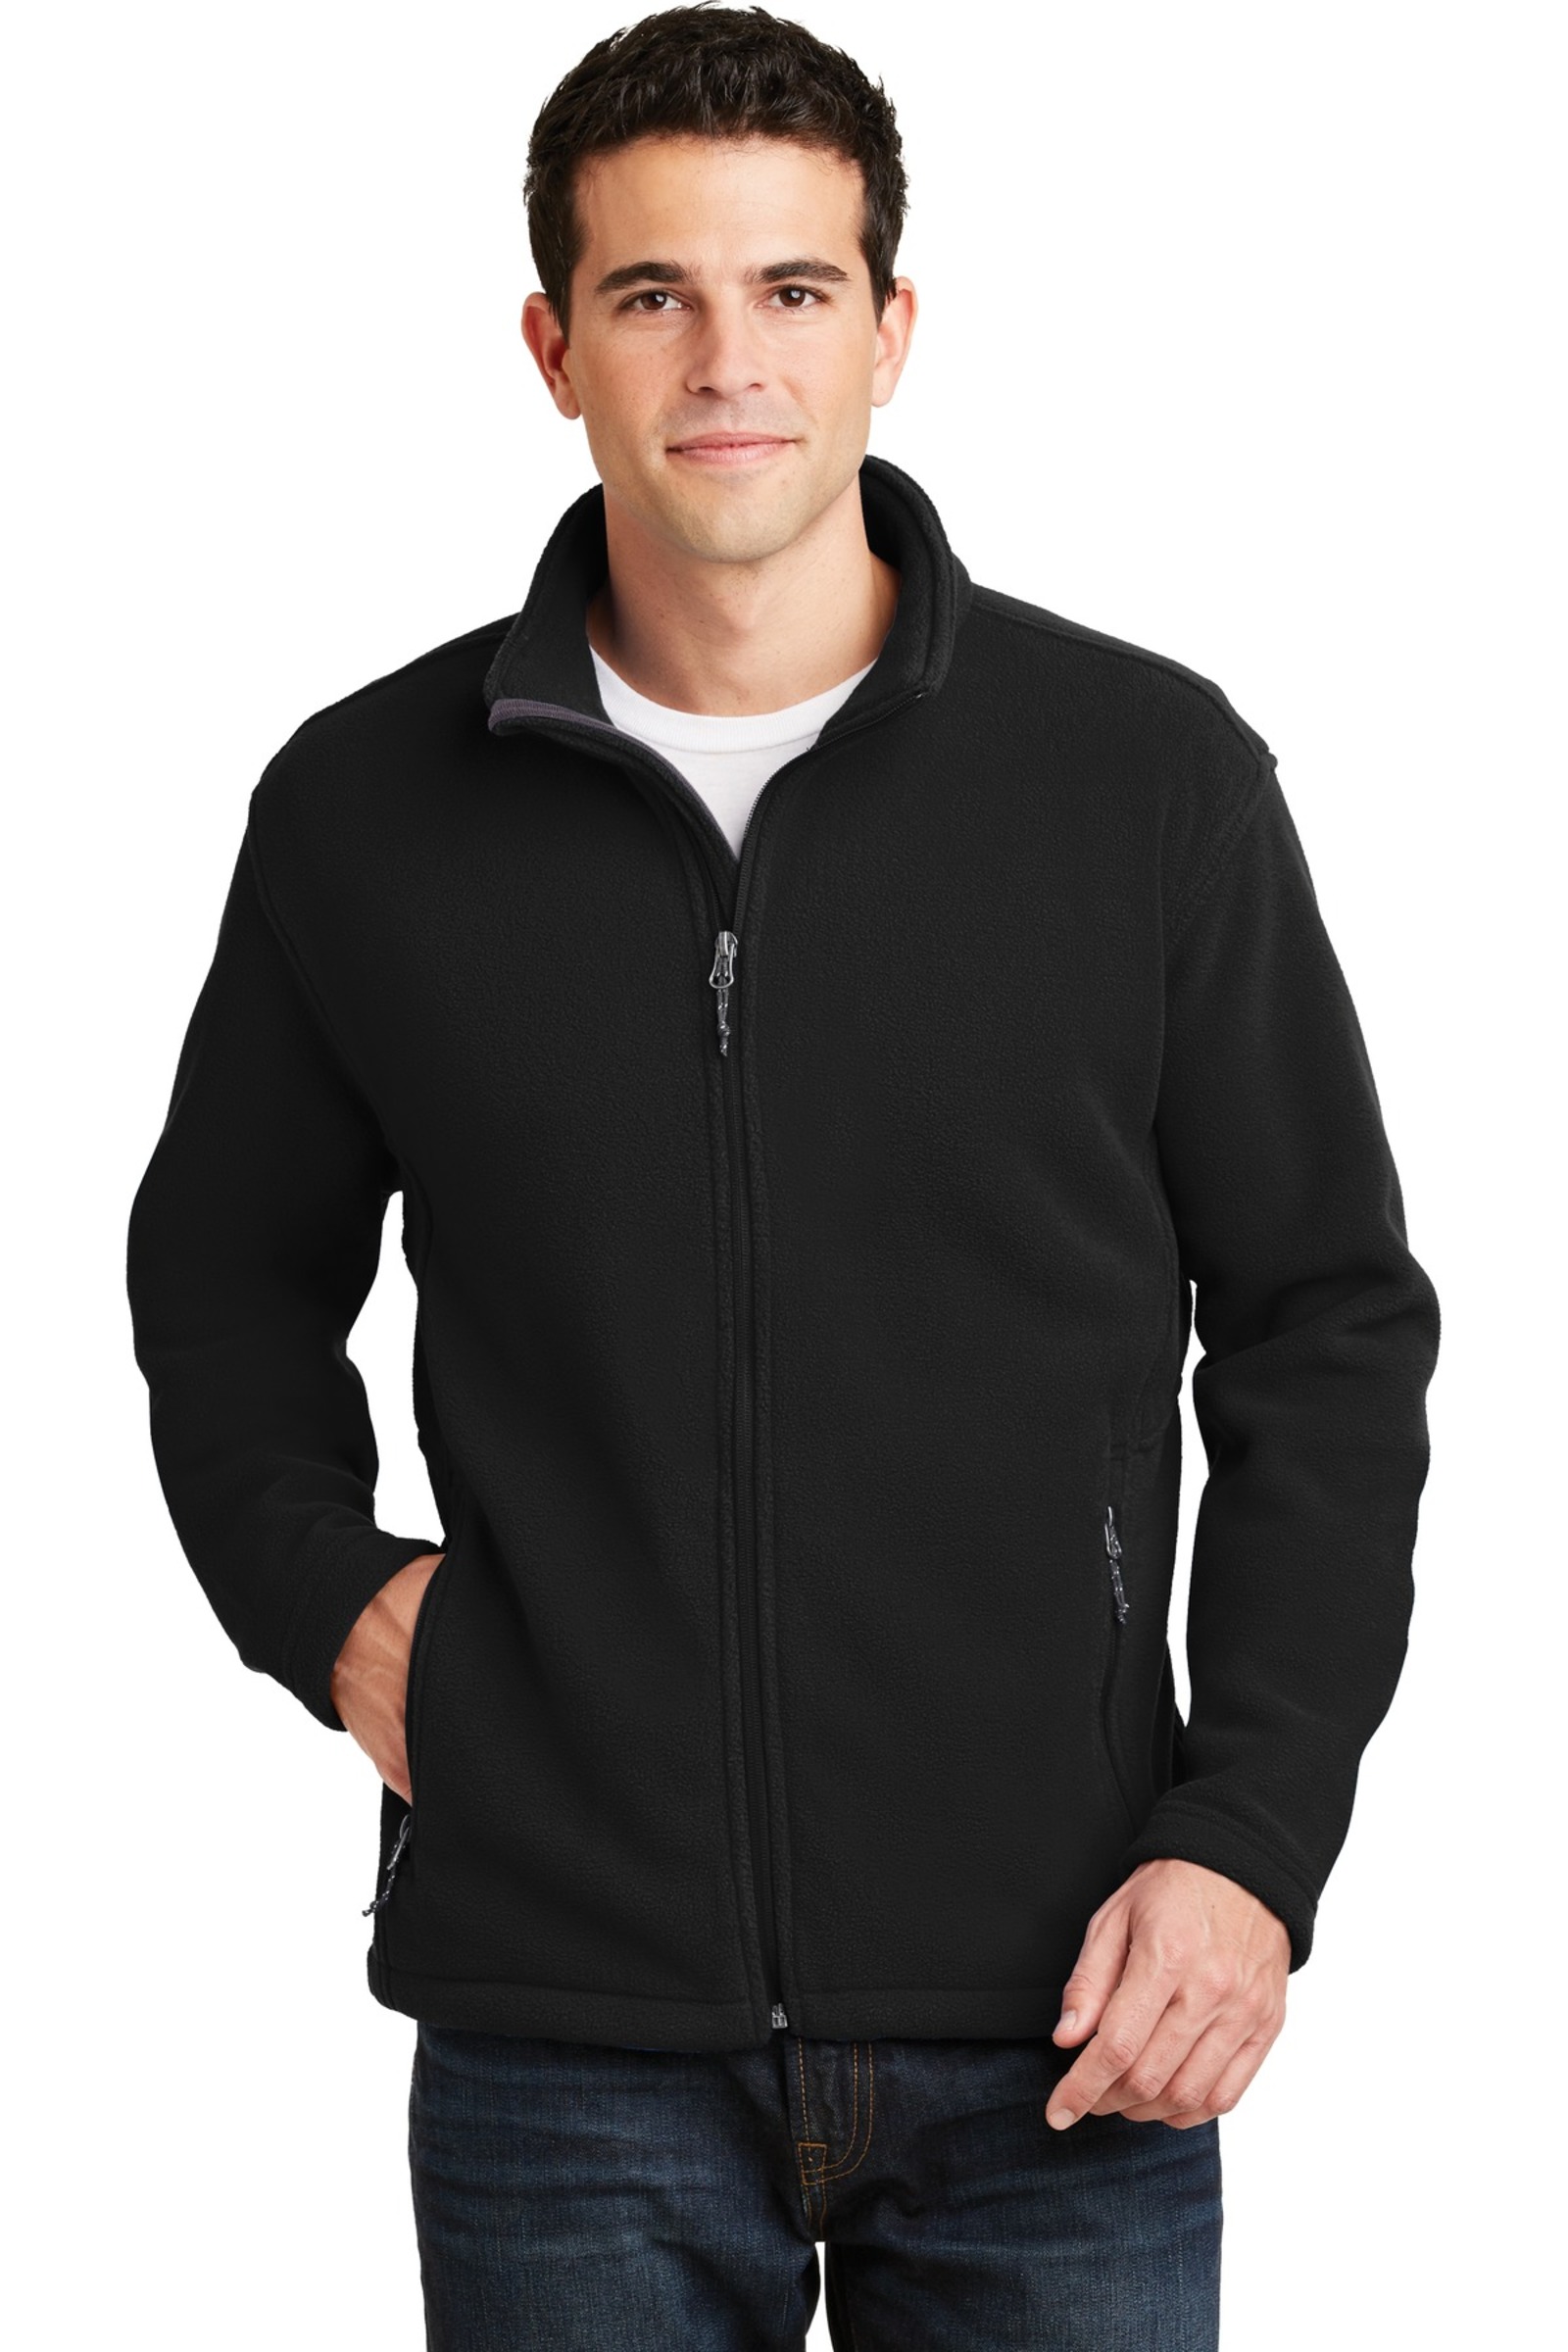 Port Authority Embroidered Men's Value Fleece Jacket | Fleece Apparel ...